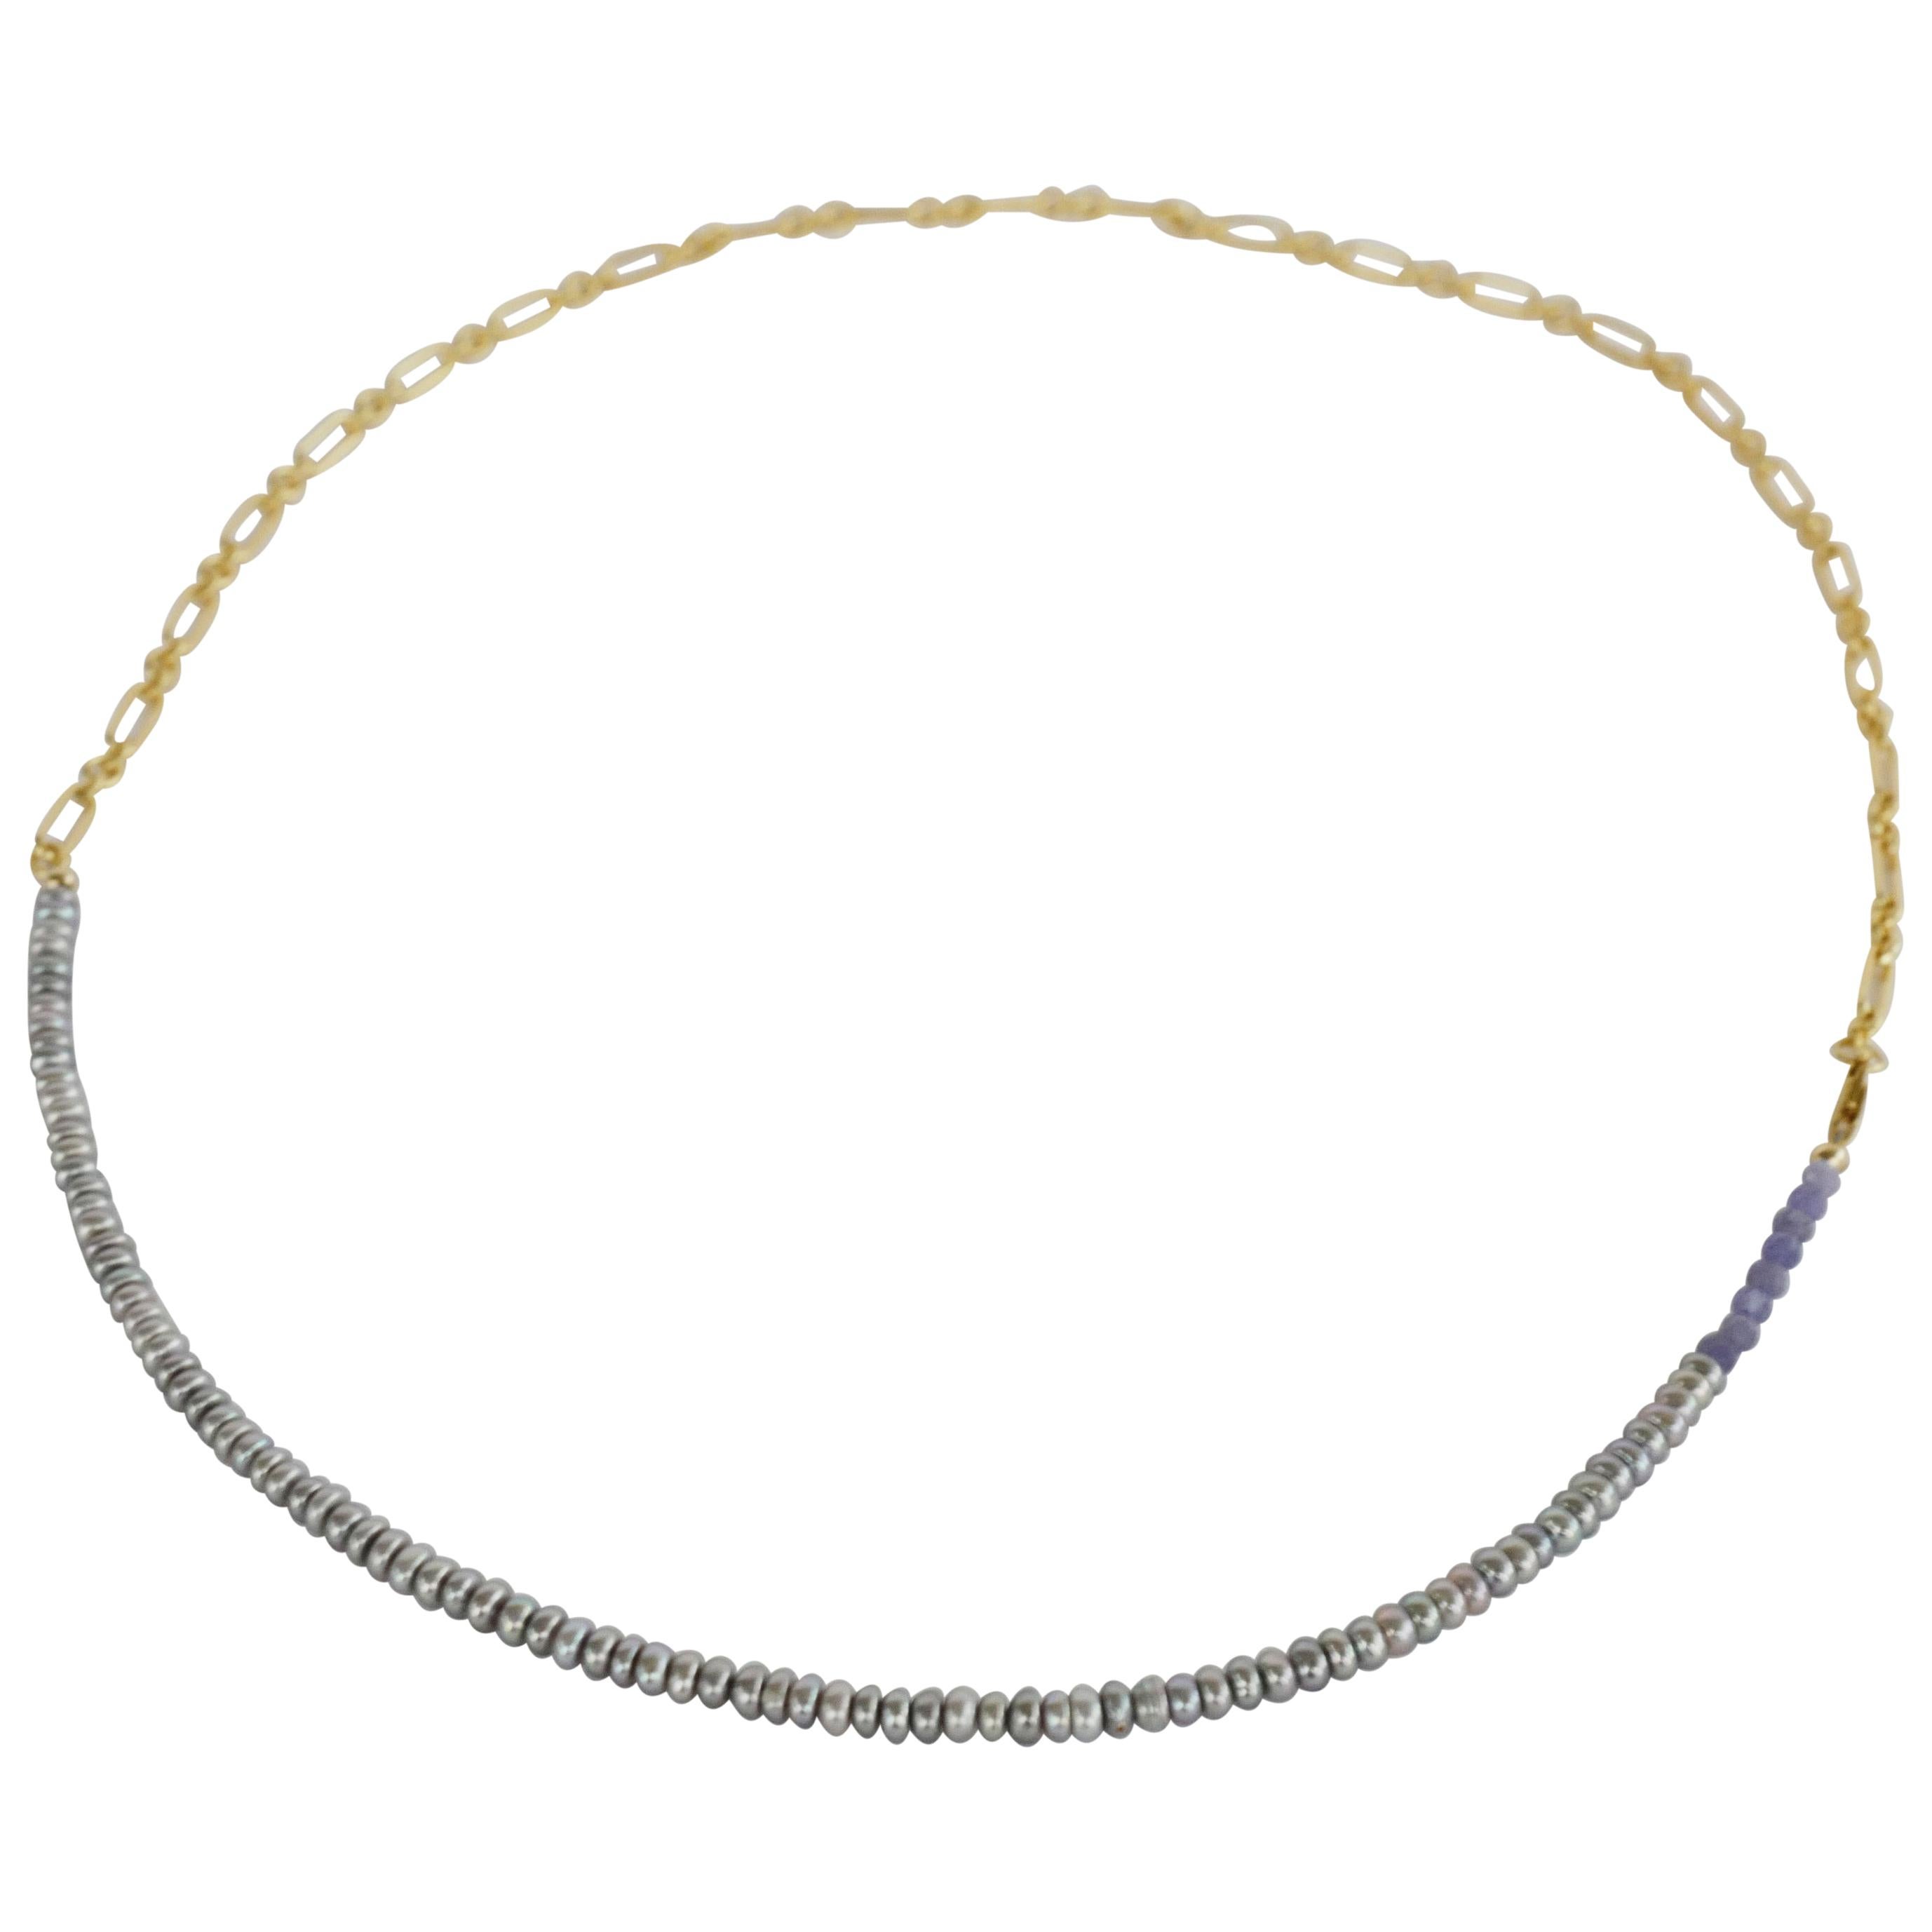 Perlenkette Silber Perle Tansanit Choker Halskette J Dauphin

